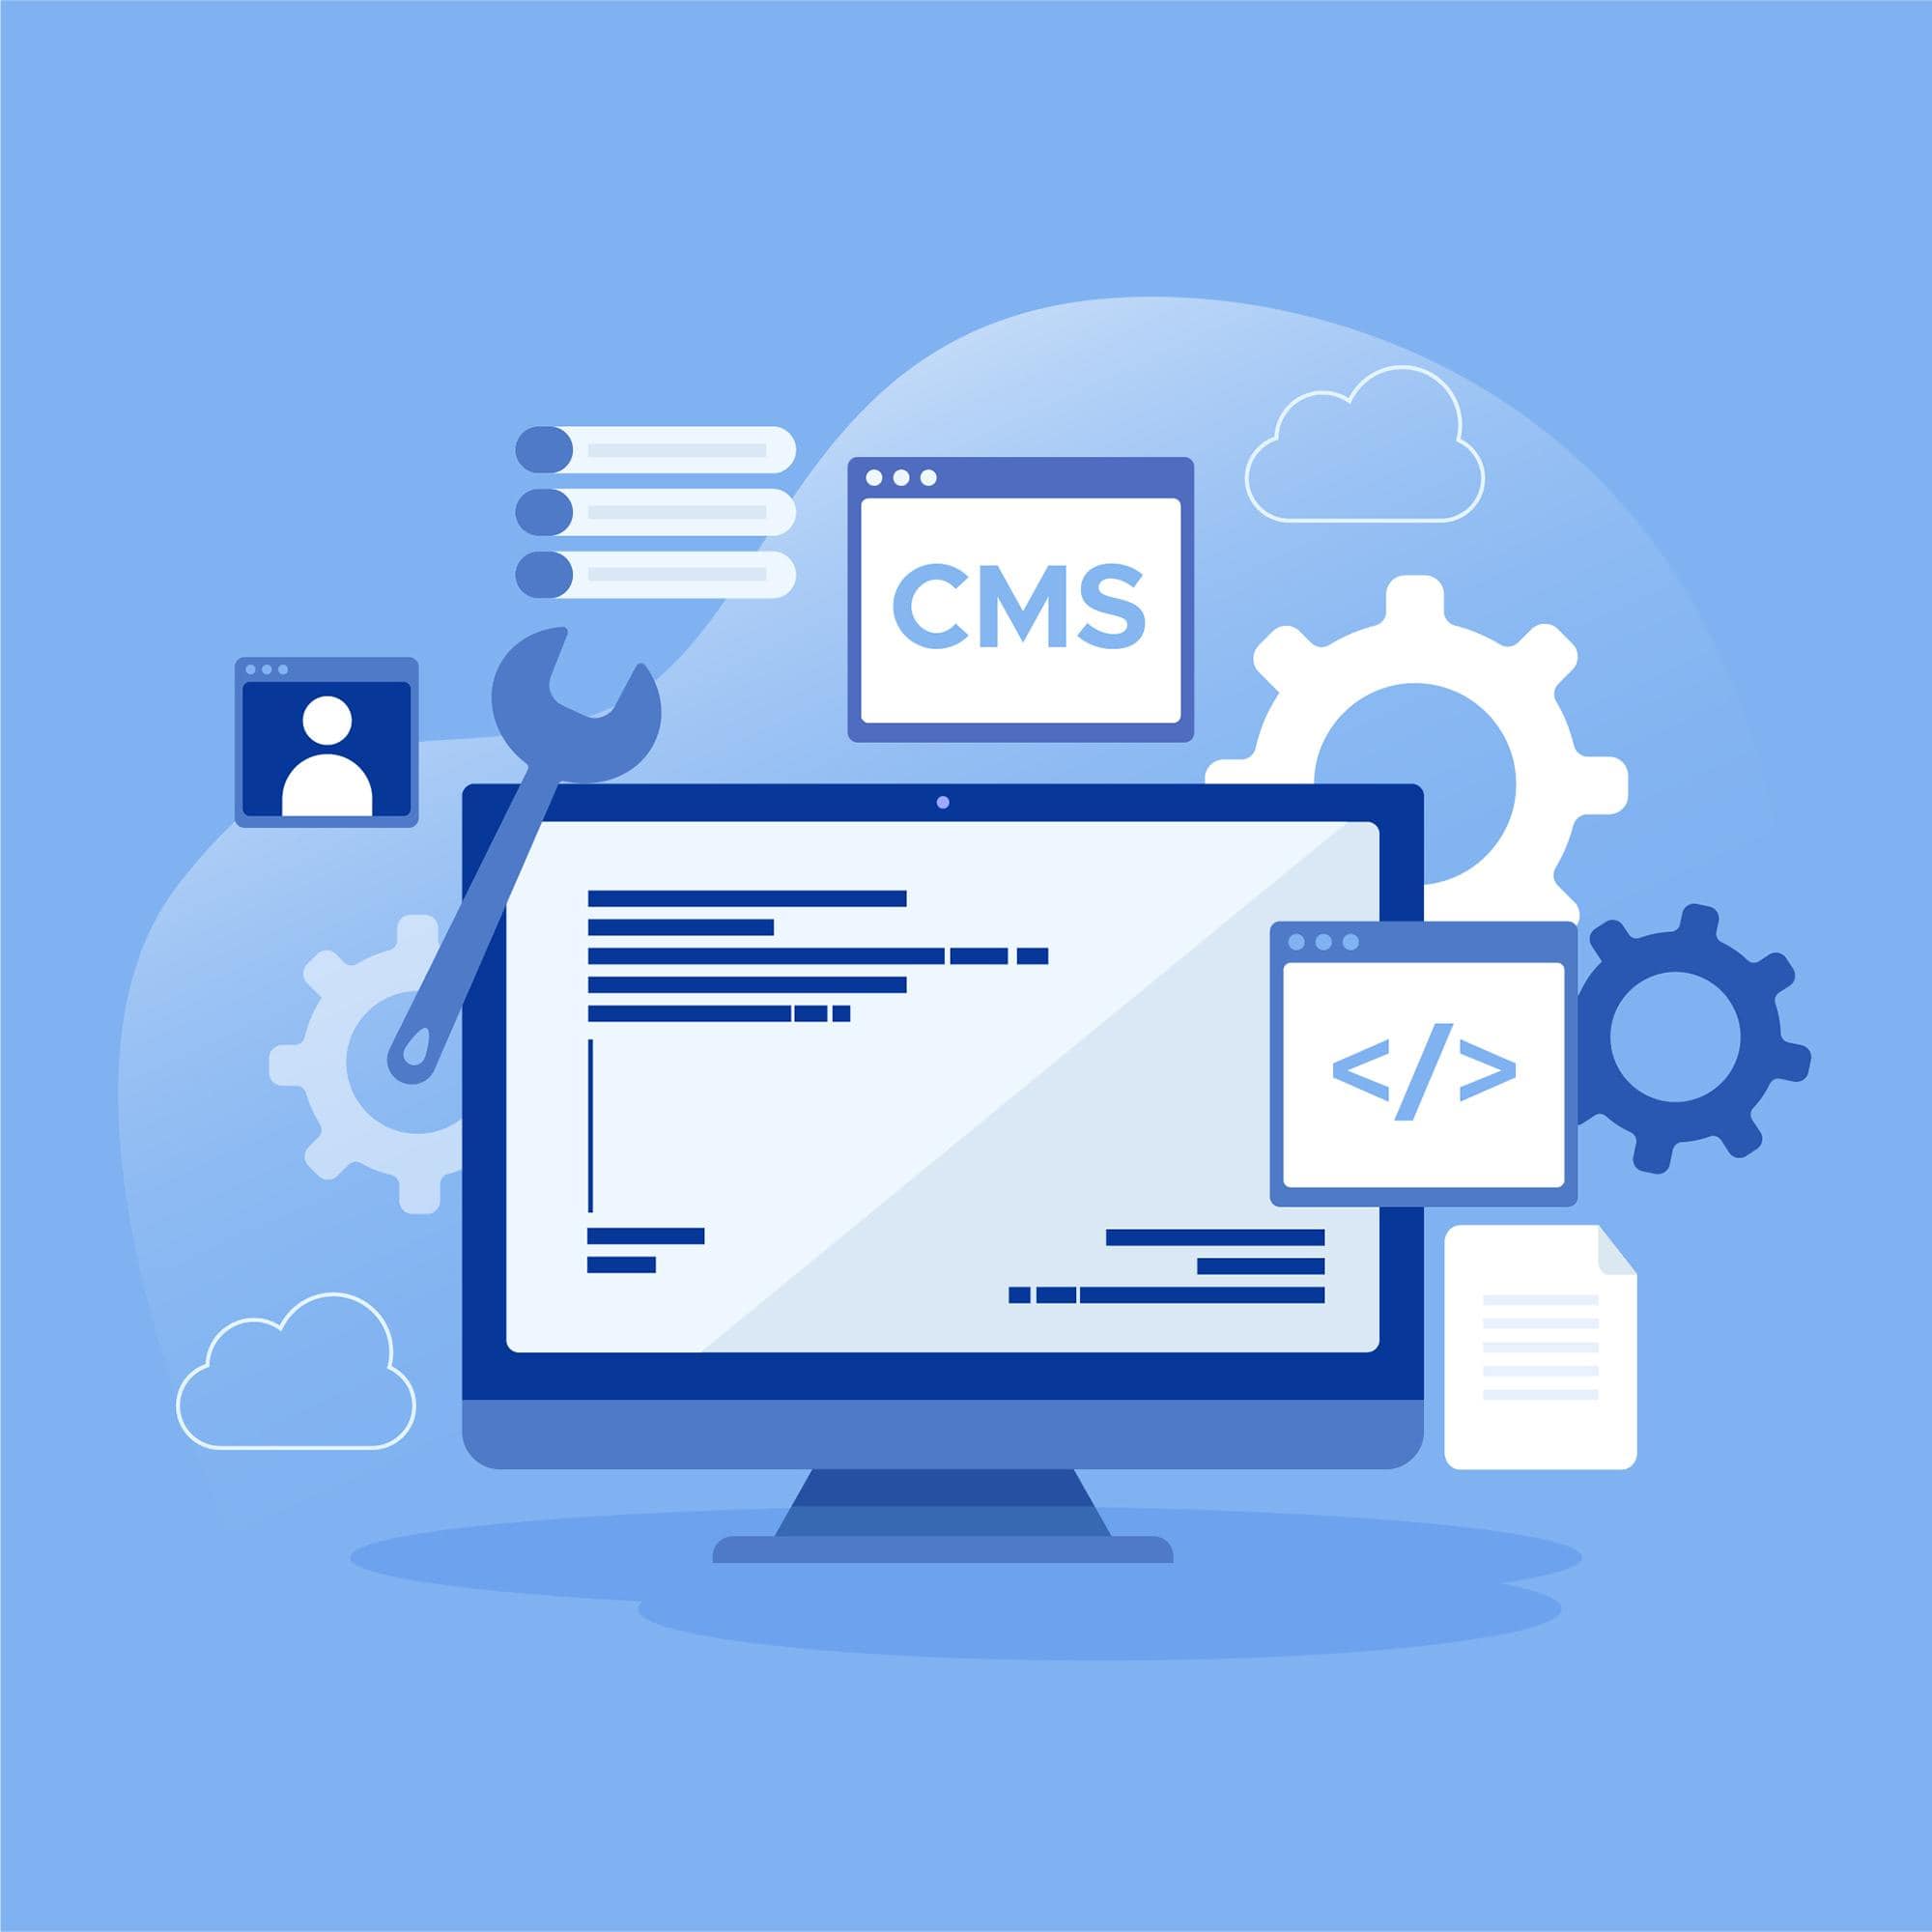 Cms  برنامه میباشد که بر روی هاست ما نصب میشود و به واسطه ان میتوانیم قالب ها و افزونه های مختلف را برای طراحی سایت و صفحات وب برای اهداف تعریف شده و در زمینه های مختلف نصب کنیم.